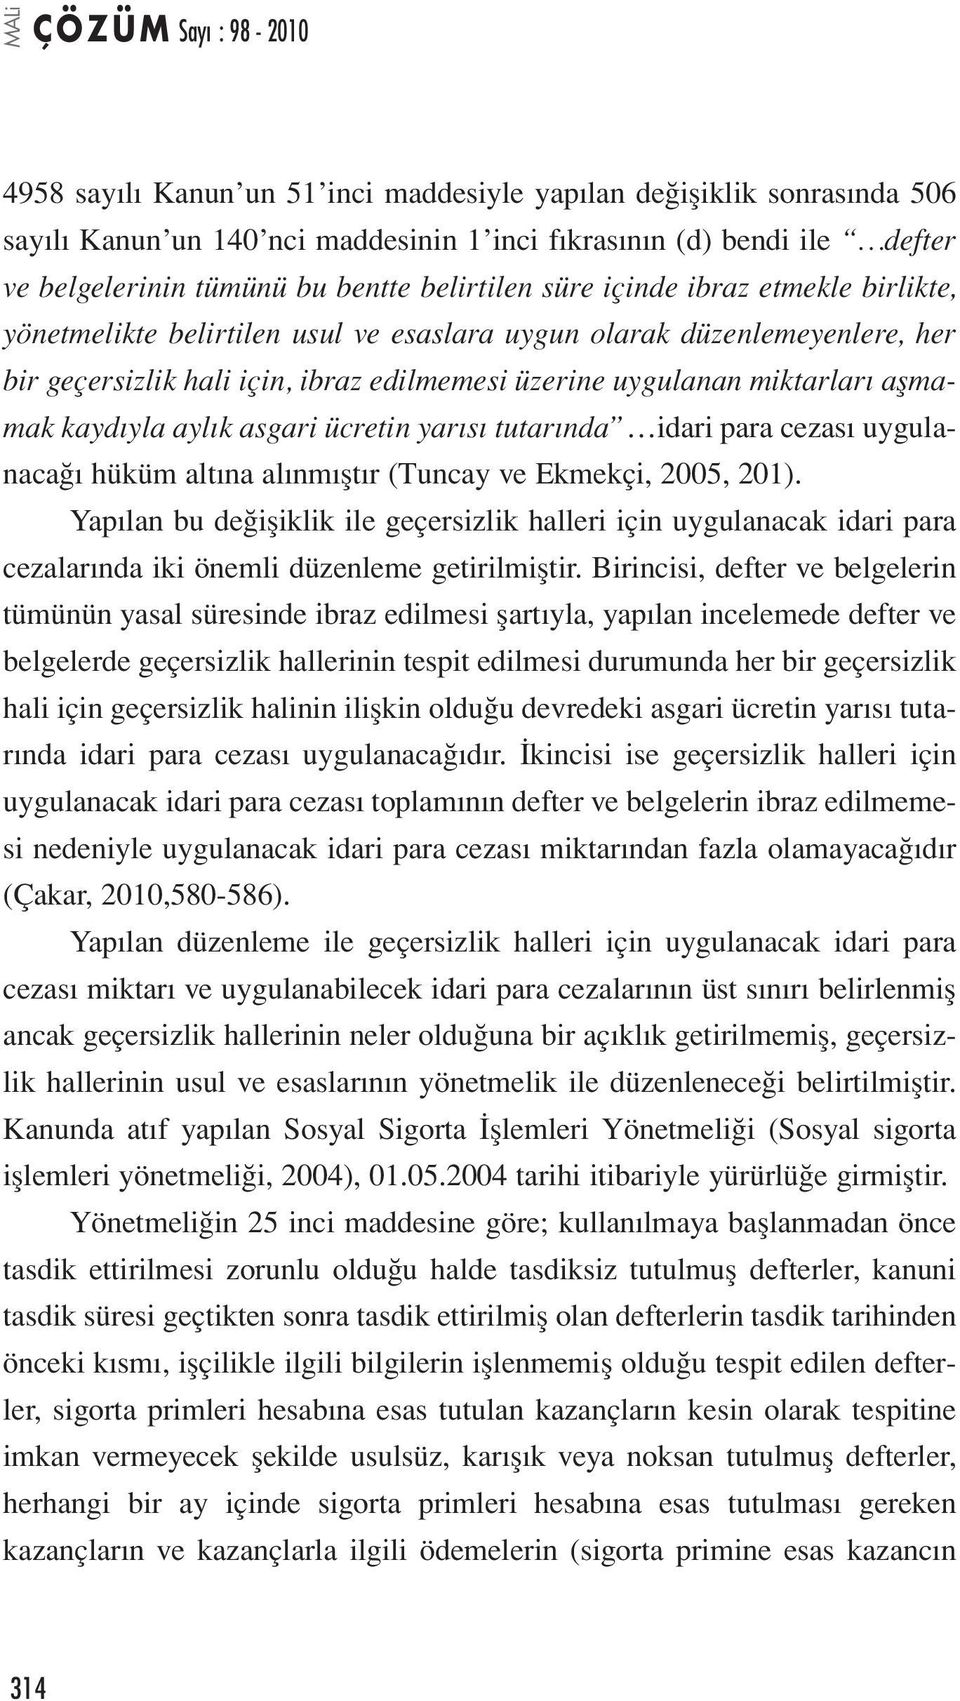 aylık asgari ücretin yarısı tutarında idari para cezası uygulanacağı hüküm altına alınmıştır (Tuncay ve Ekmekçi, 2005, 201).